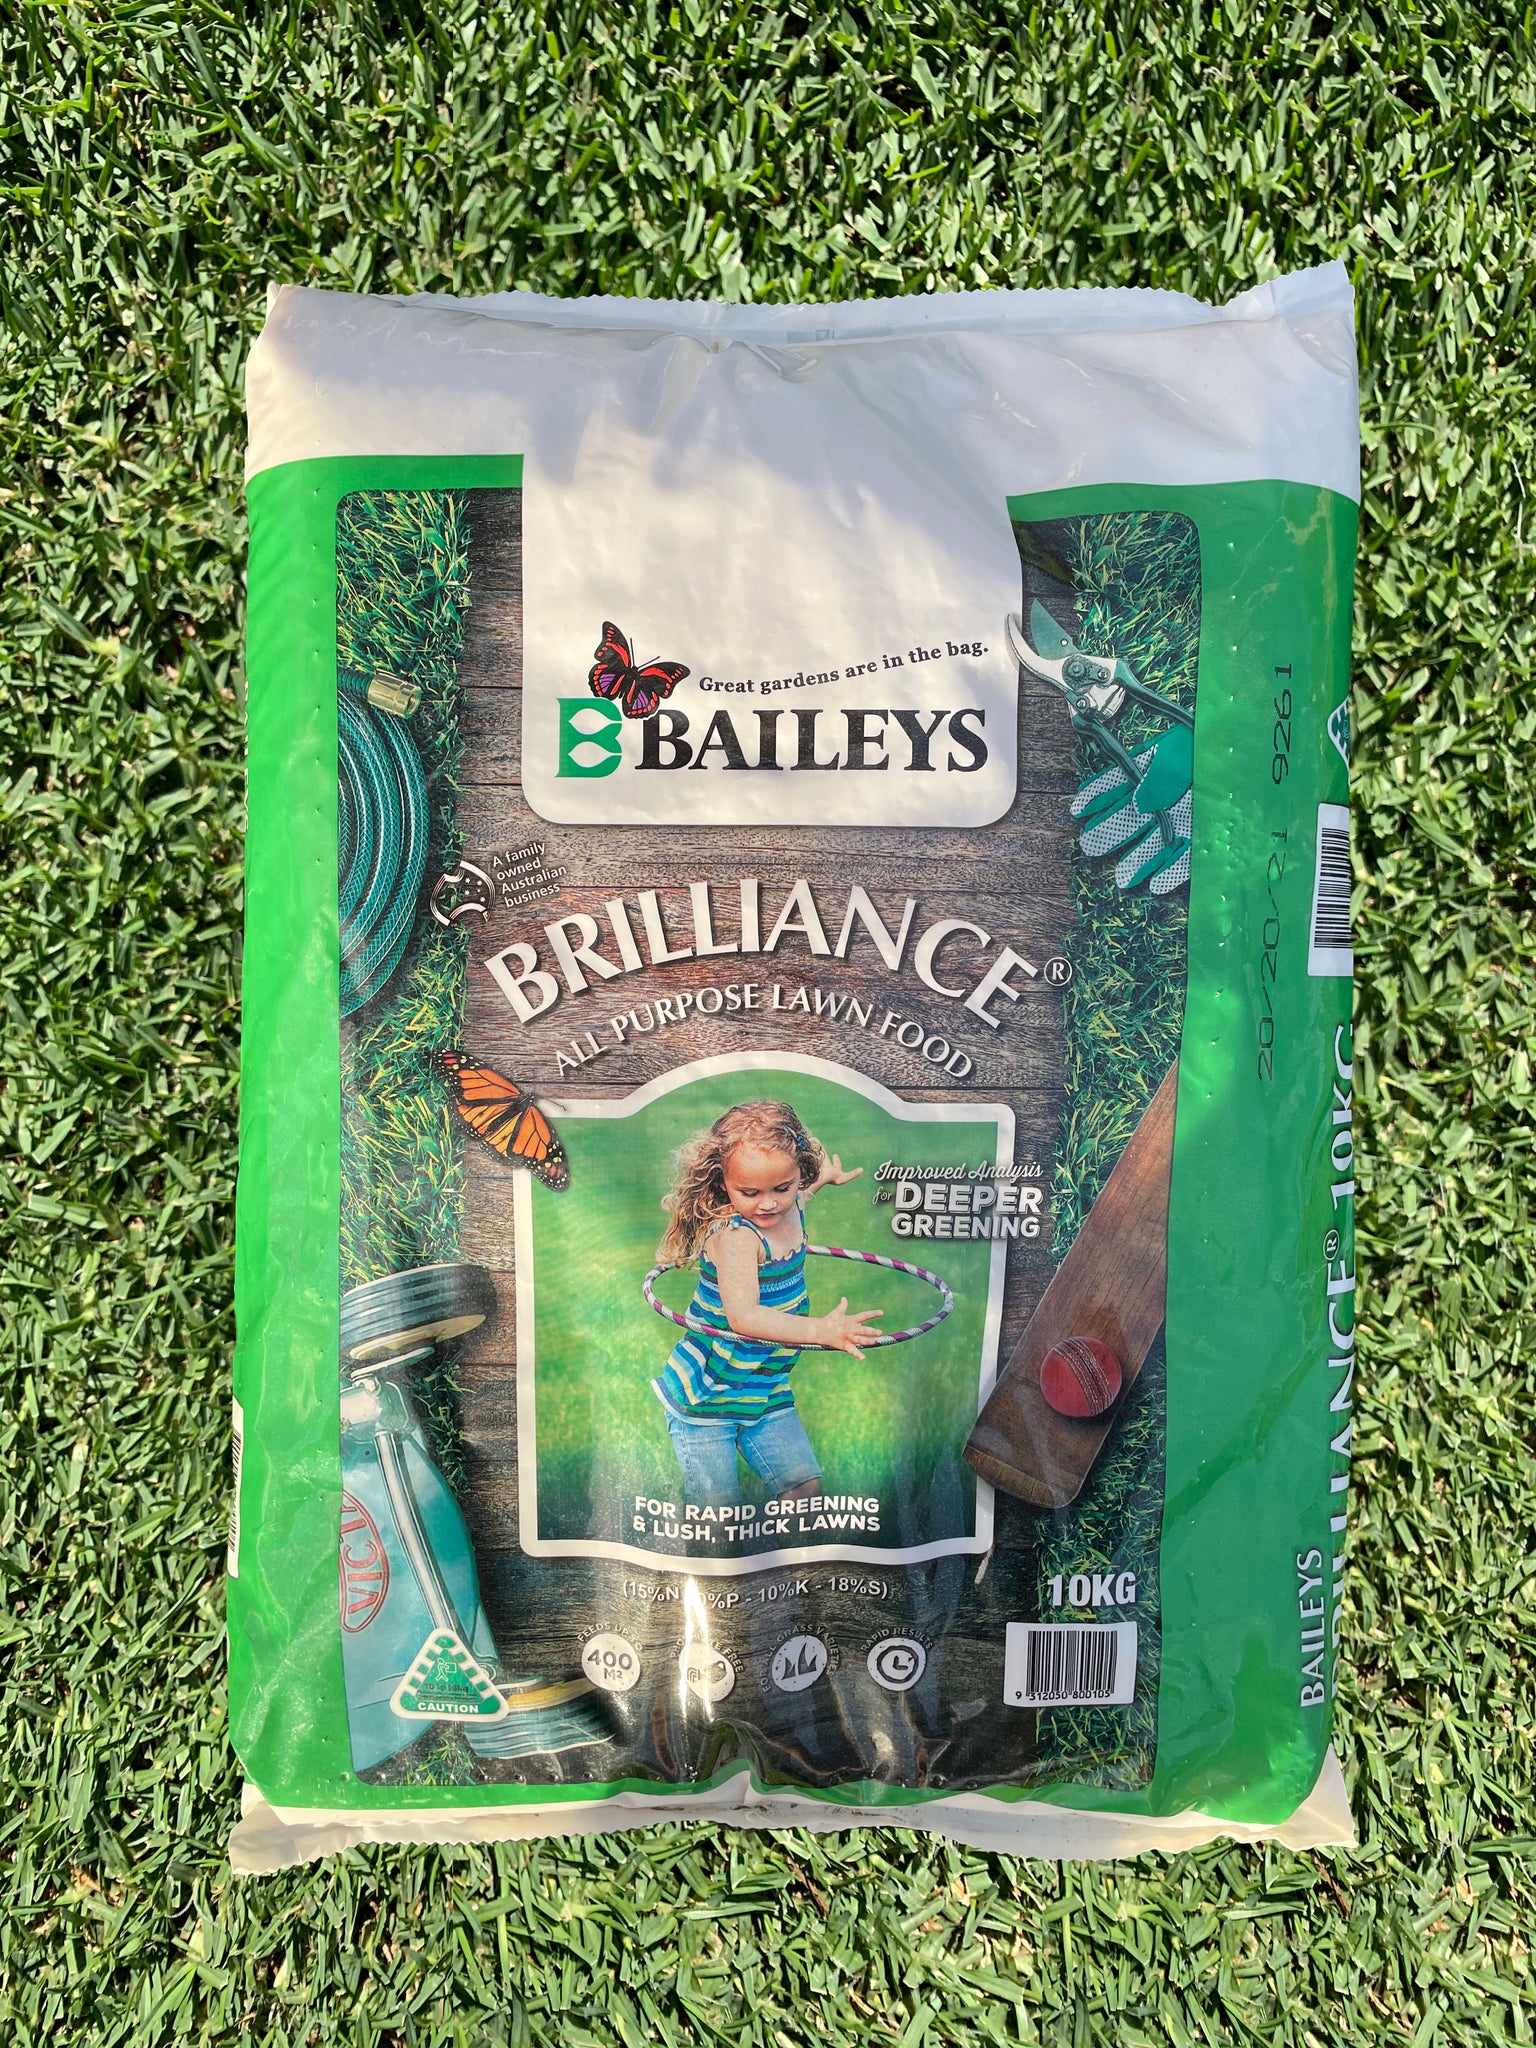 Baileys Brilliance